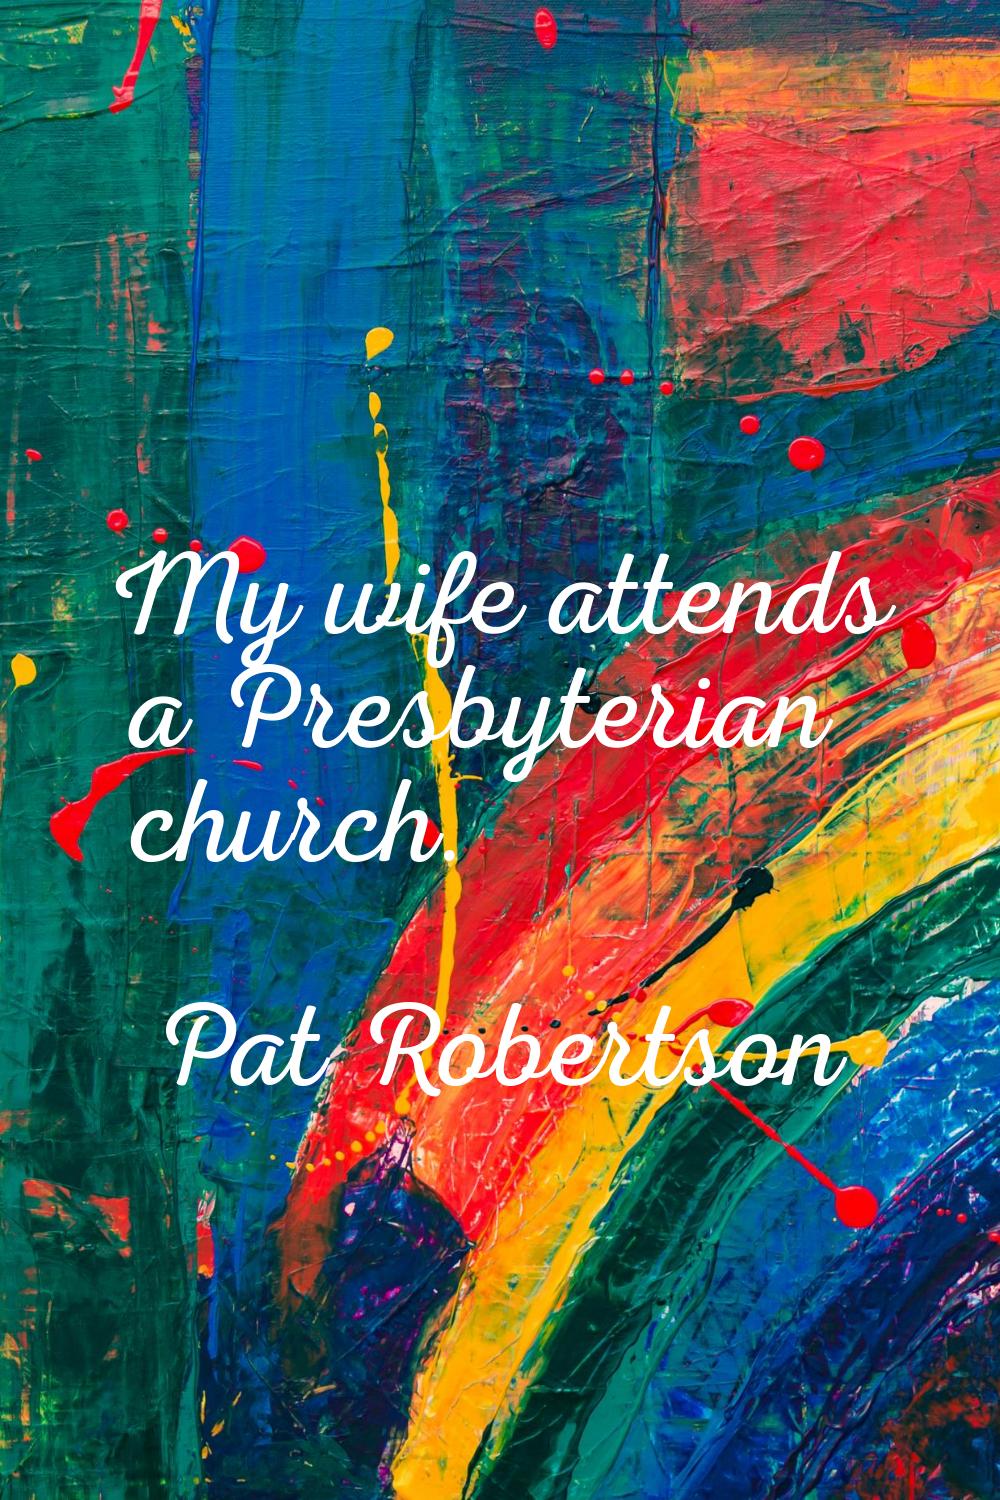 My wife attends a Presbyterian church.